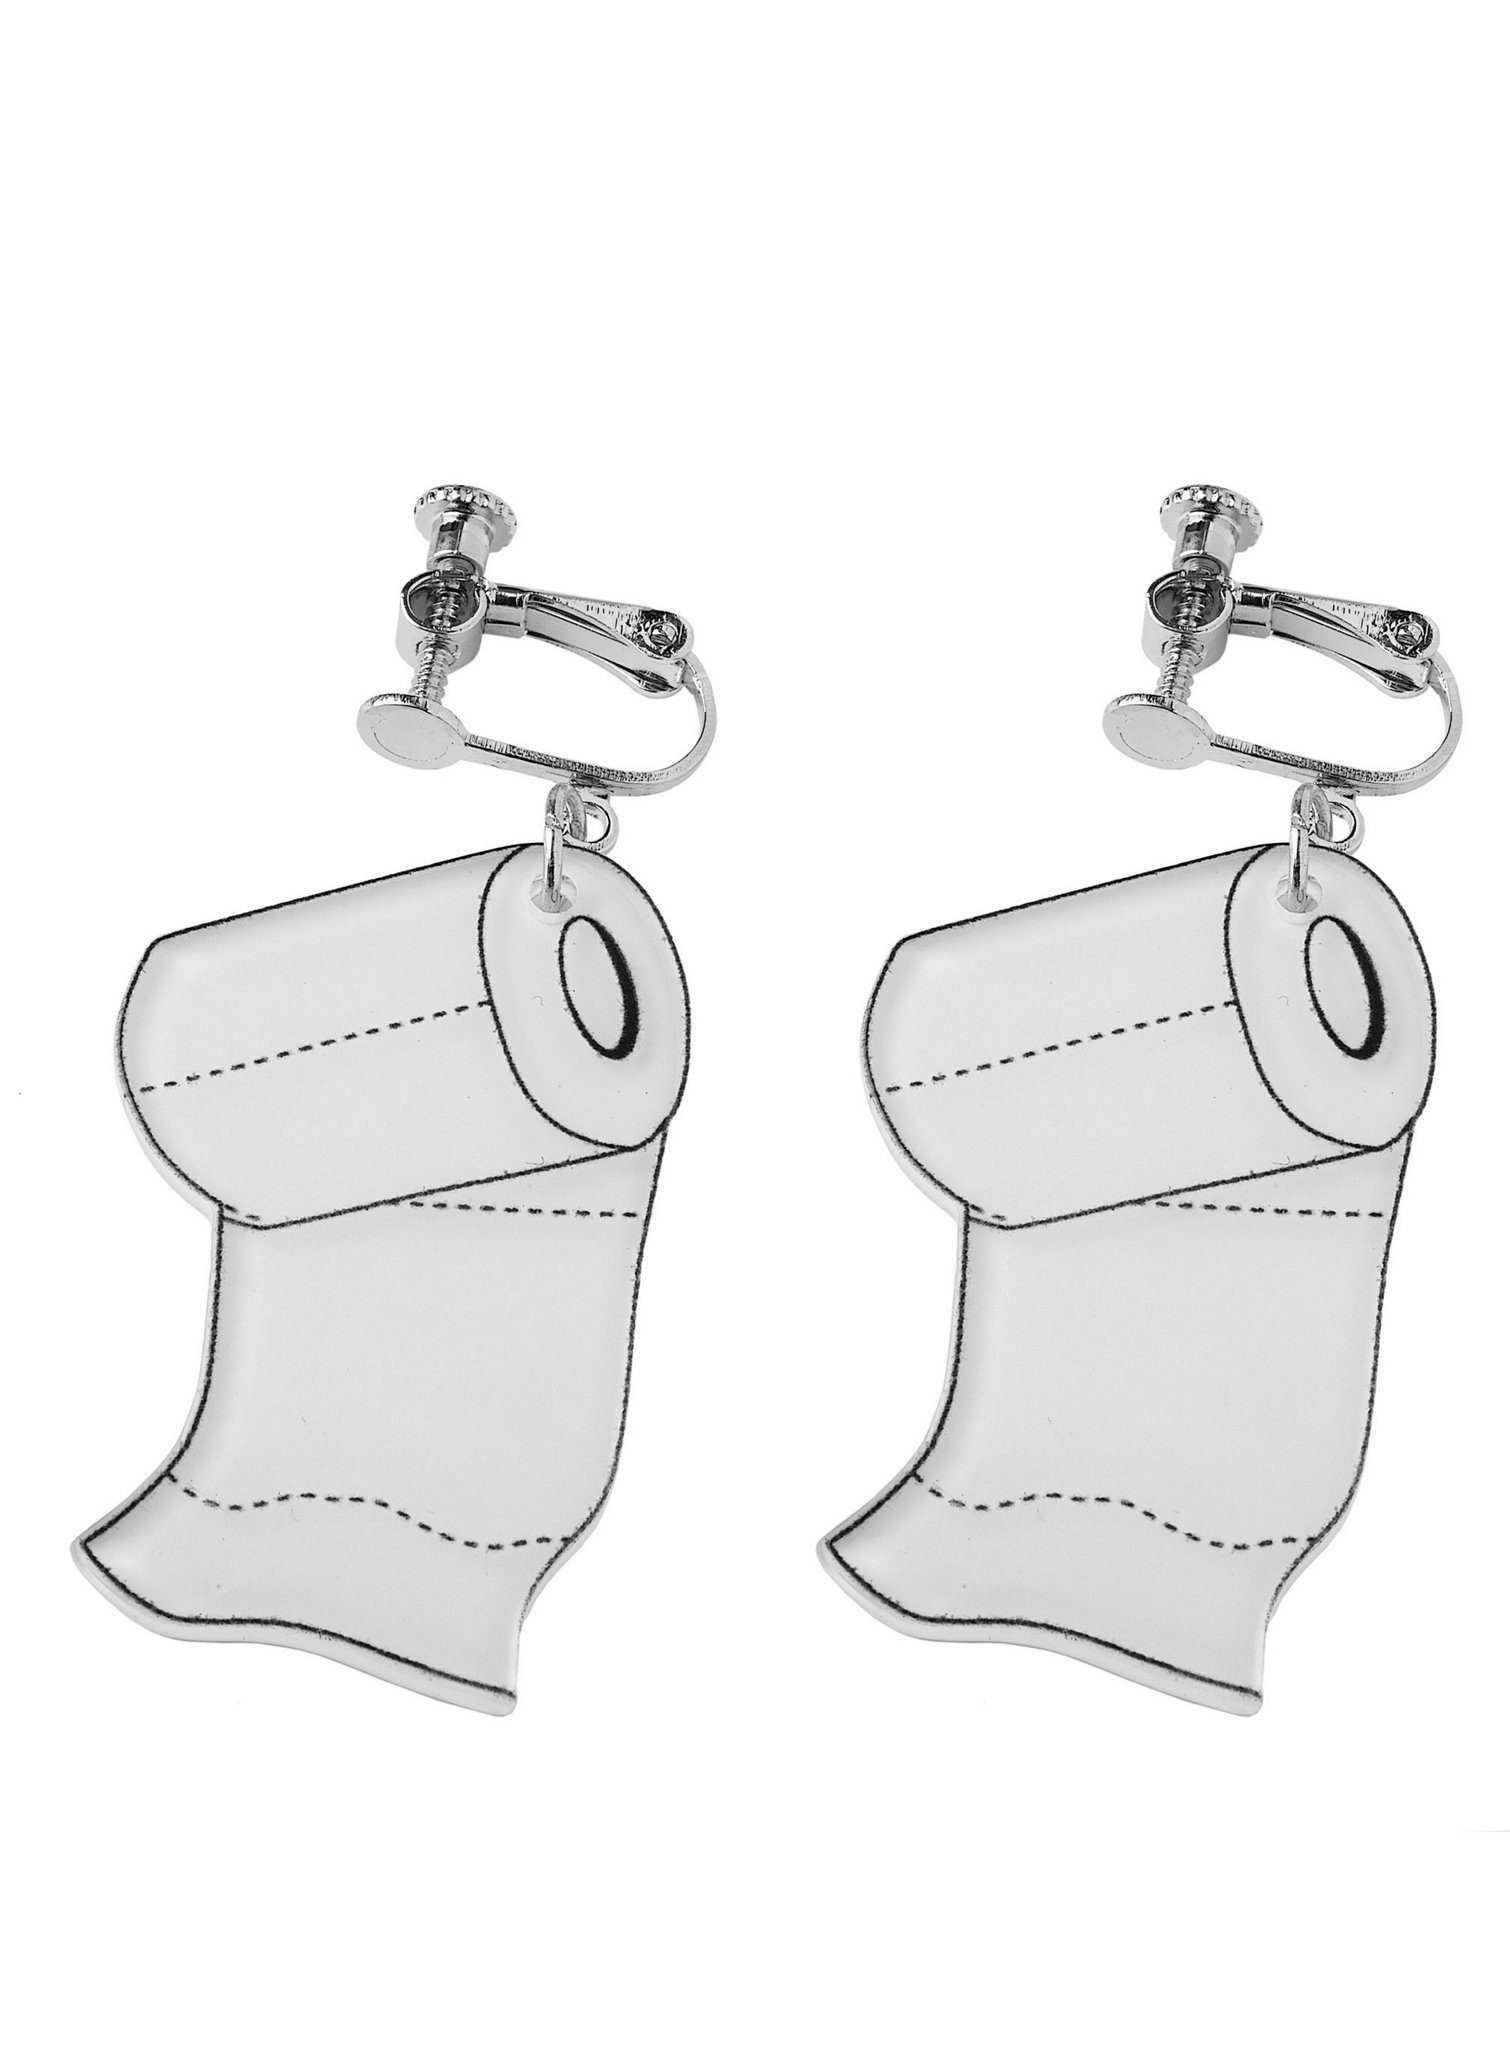 Metamorph Kostüm Toilettenpapier Ohrringe, Lustige und ausgefallene Ohrringe  mit Haken aus Edelstahl